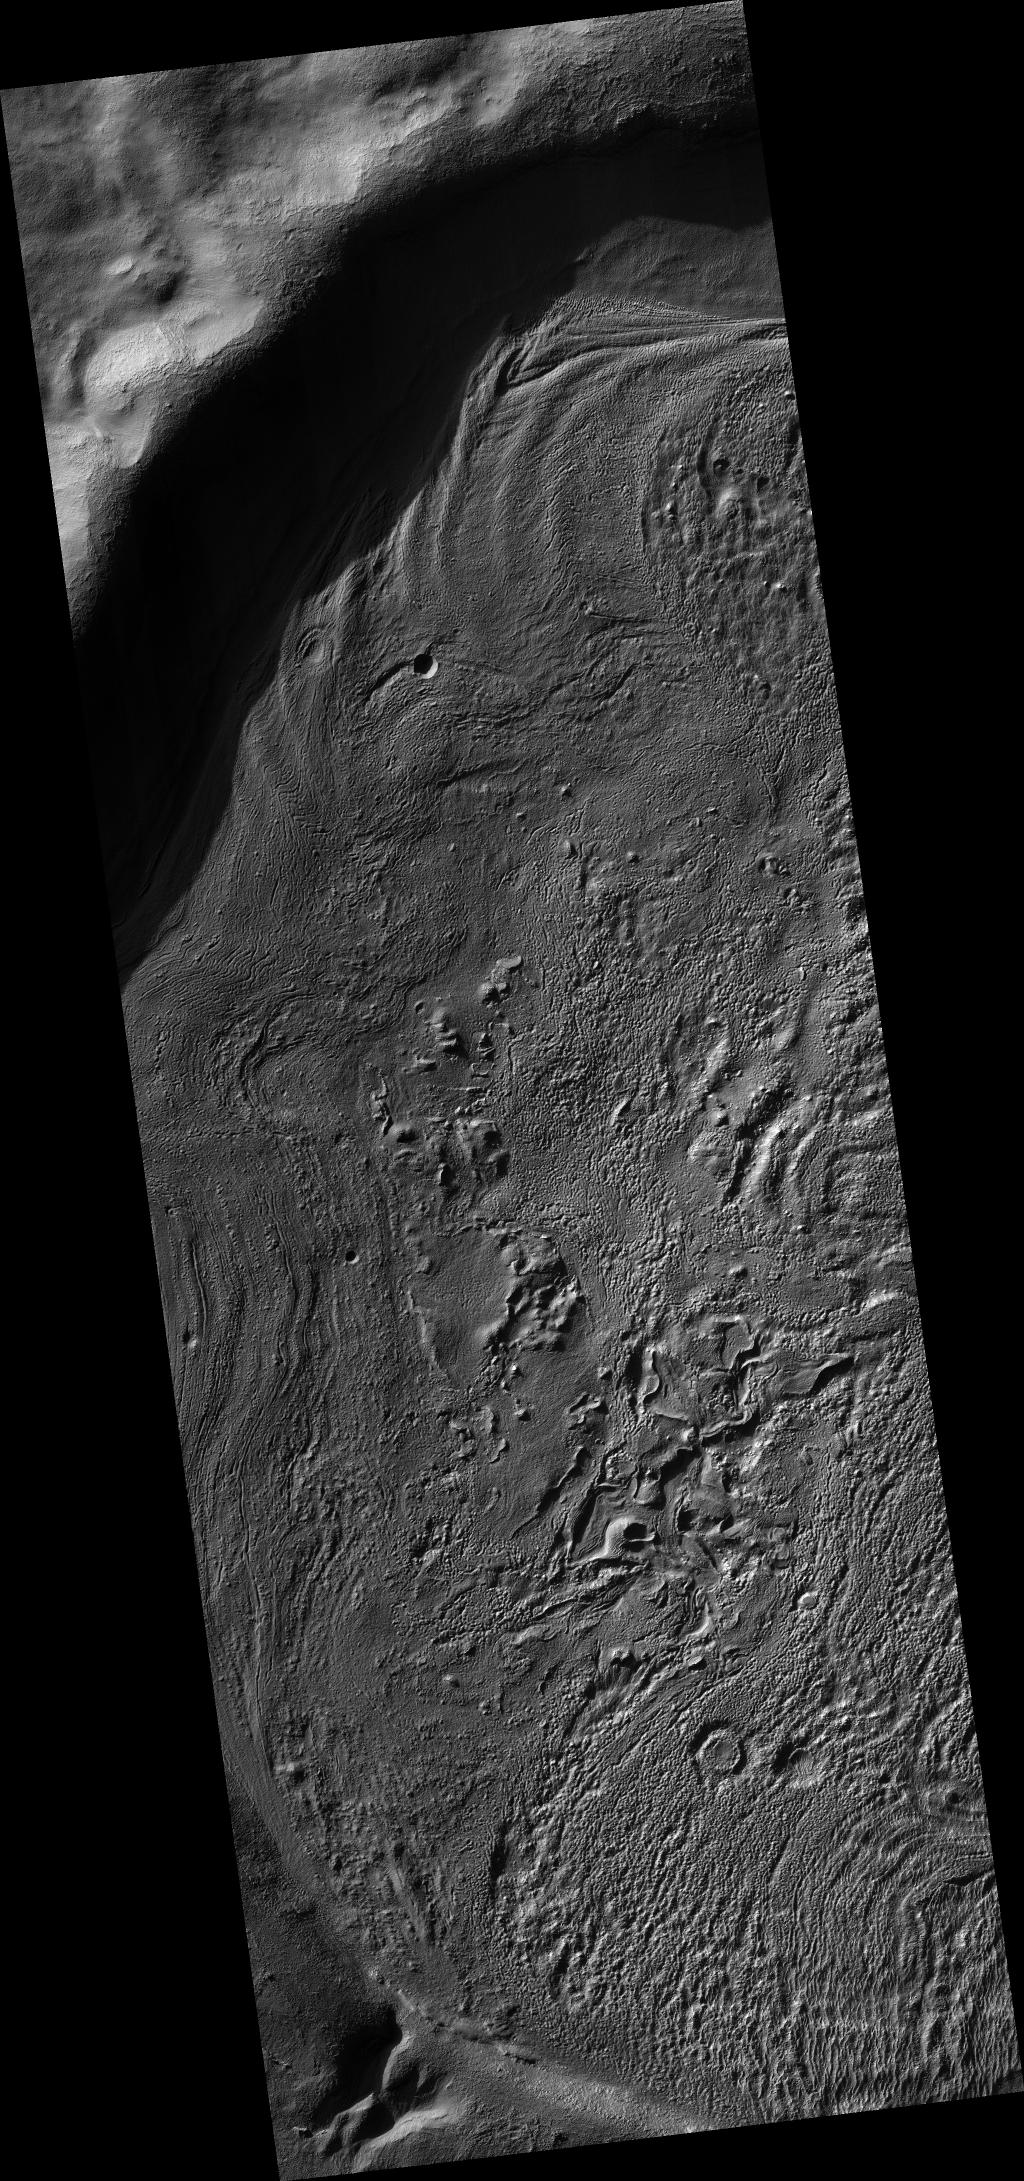 Crater Floor Deposits in Promethei Terra